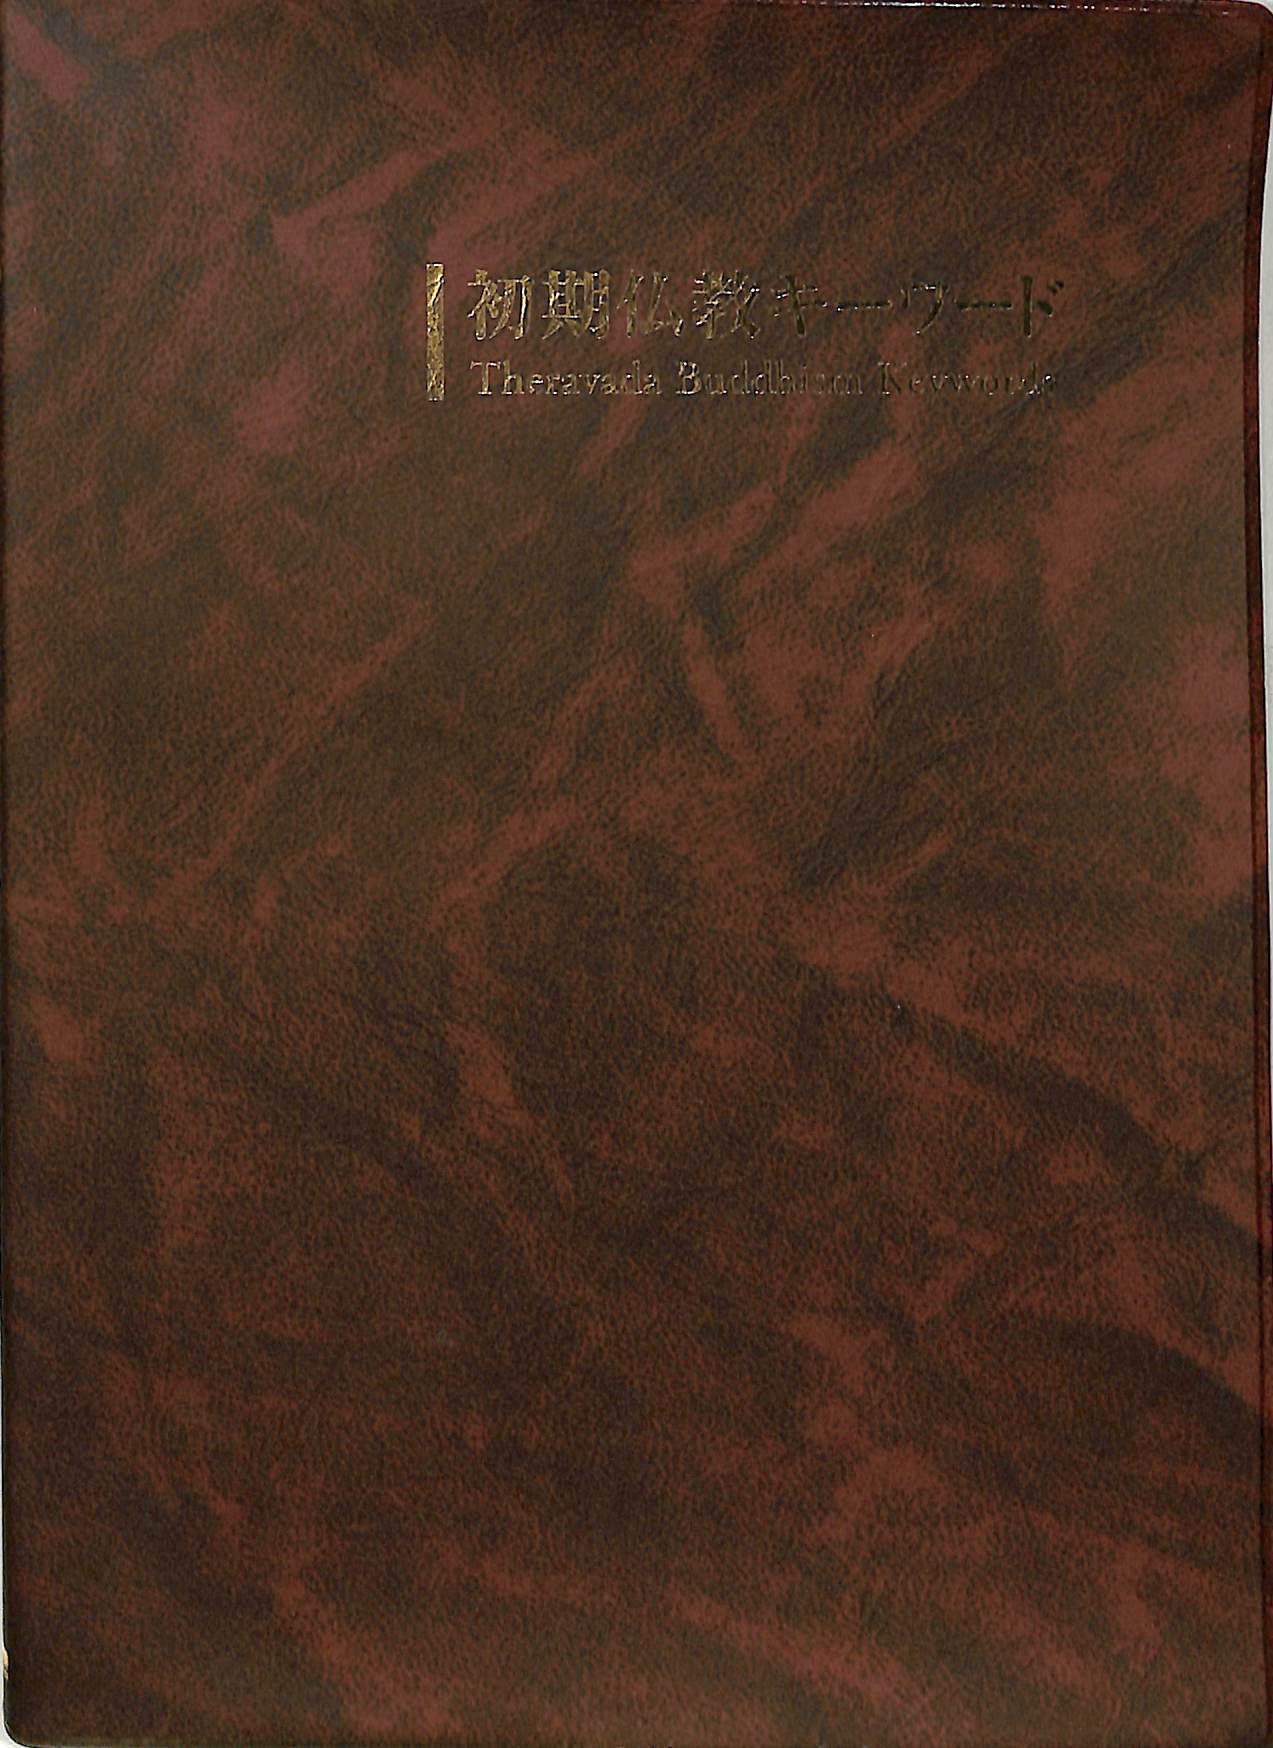 初期仏教キーワード 星飛雄馬 | 古本よみた屋 おじいさんの本、買います。